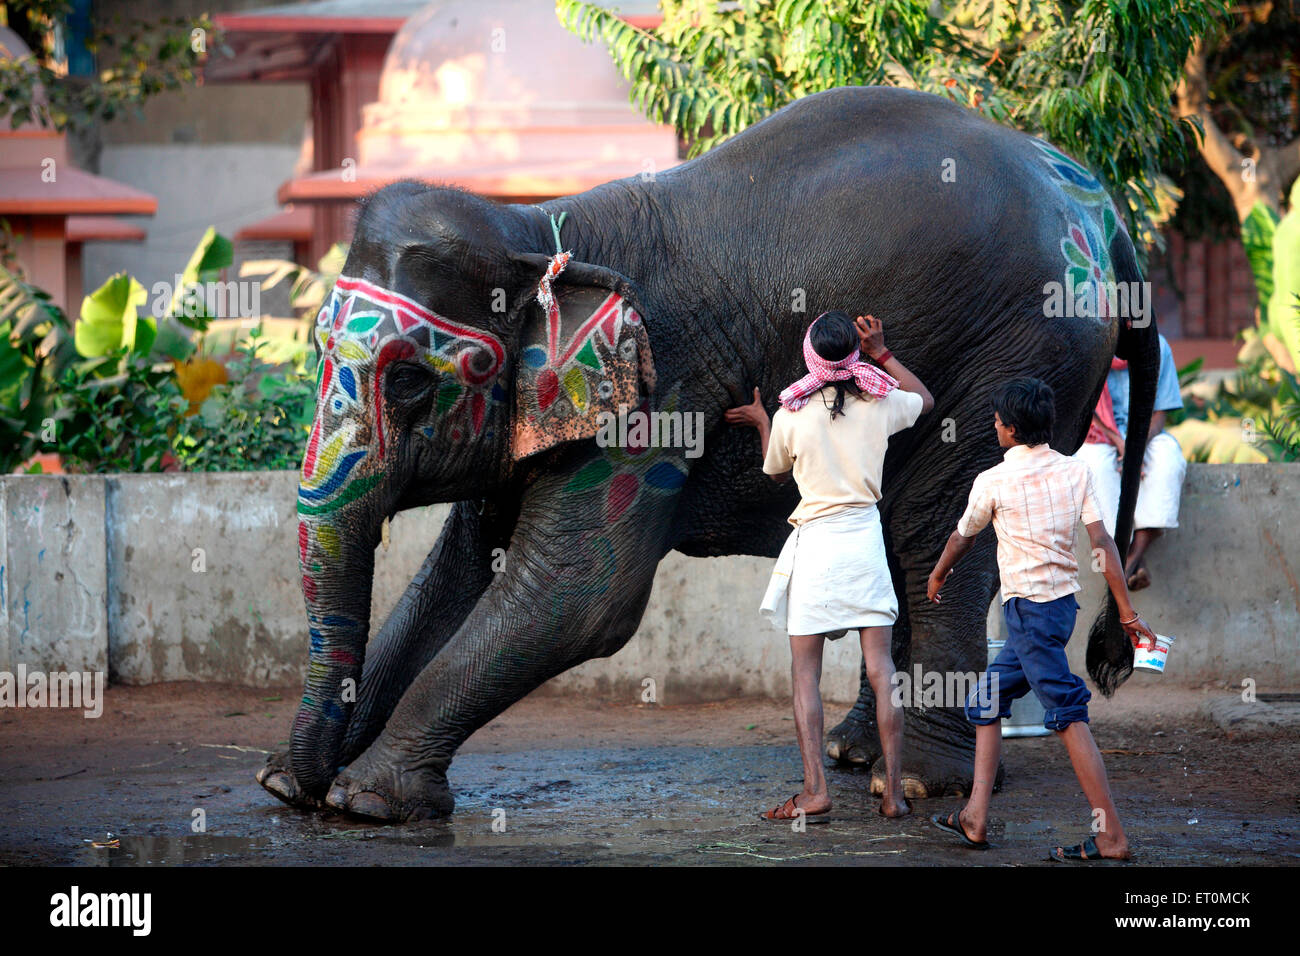 Éléphant de baignade mahout avec visage peint, Ahmedabad, Gujarat, Inde Banque D'Images